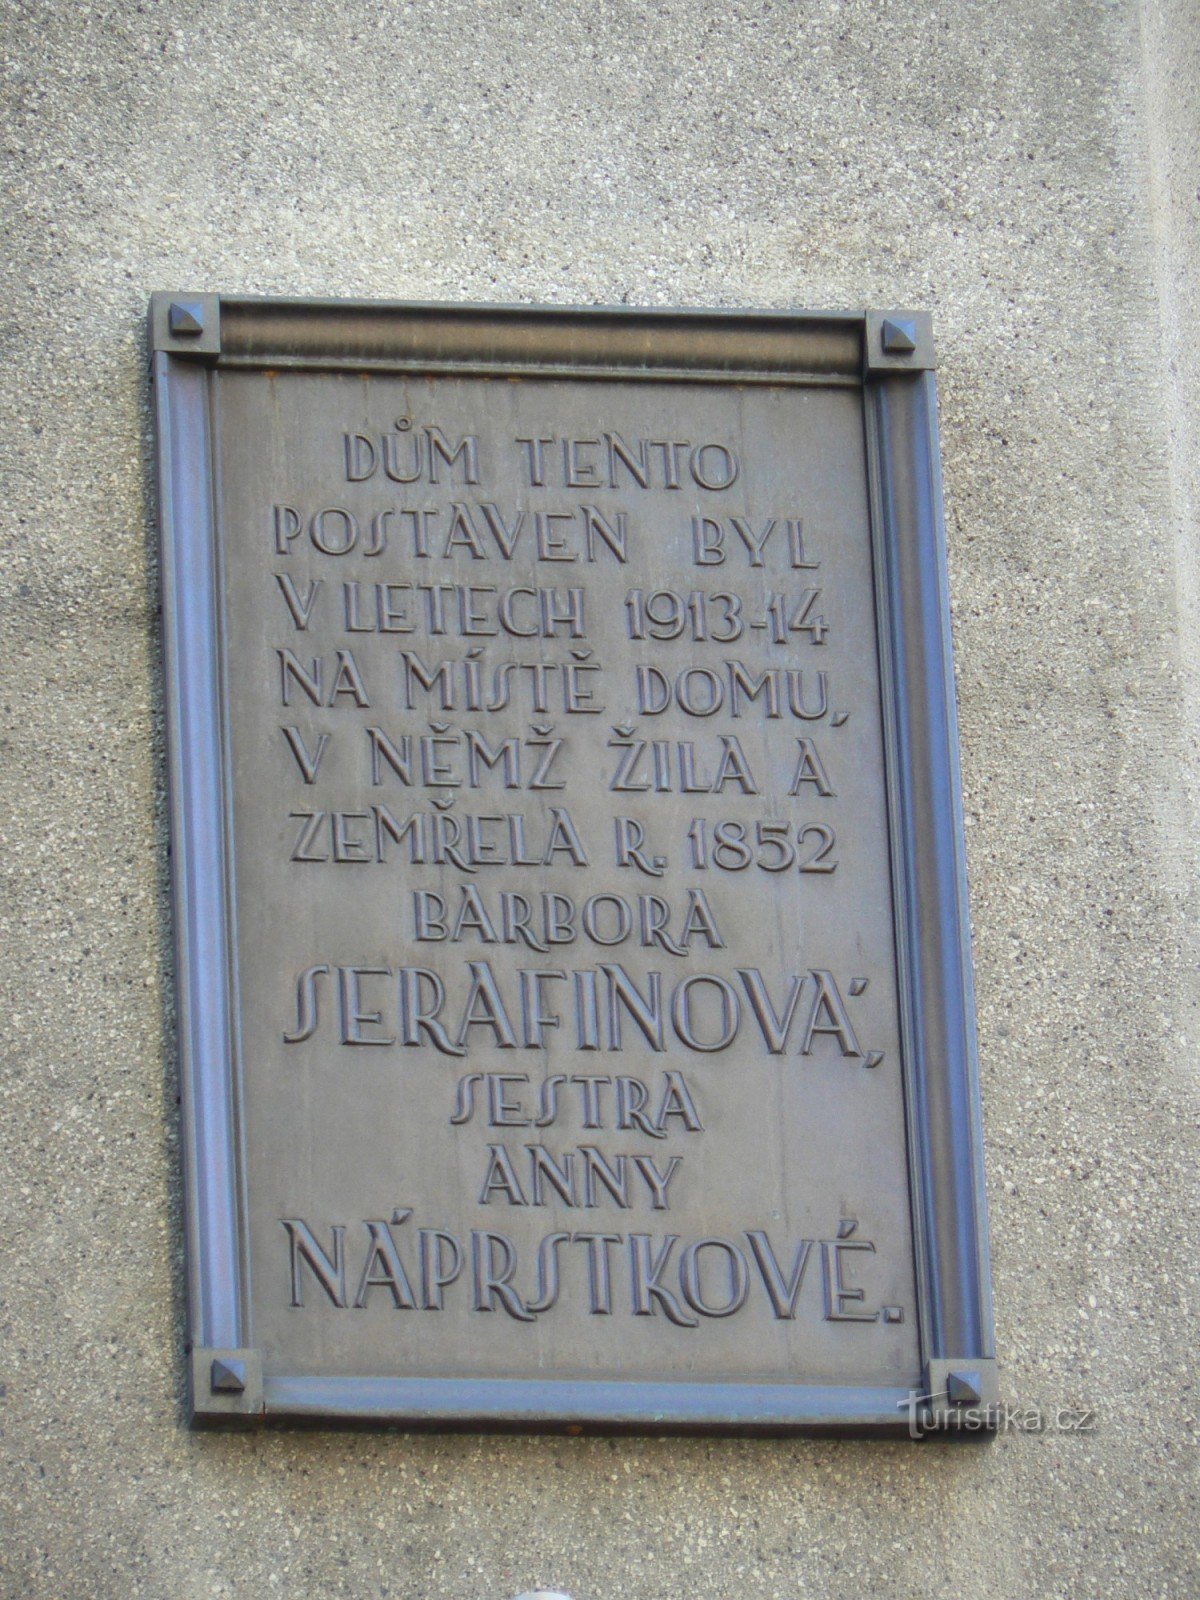 巴博拉·塞拉菲诺瓦纪念牌匾